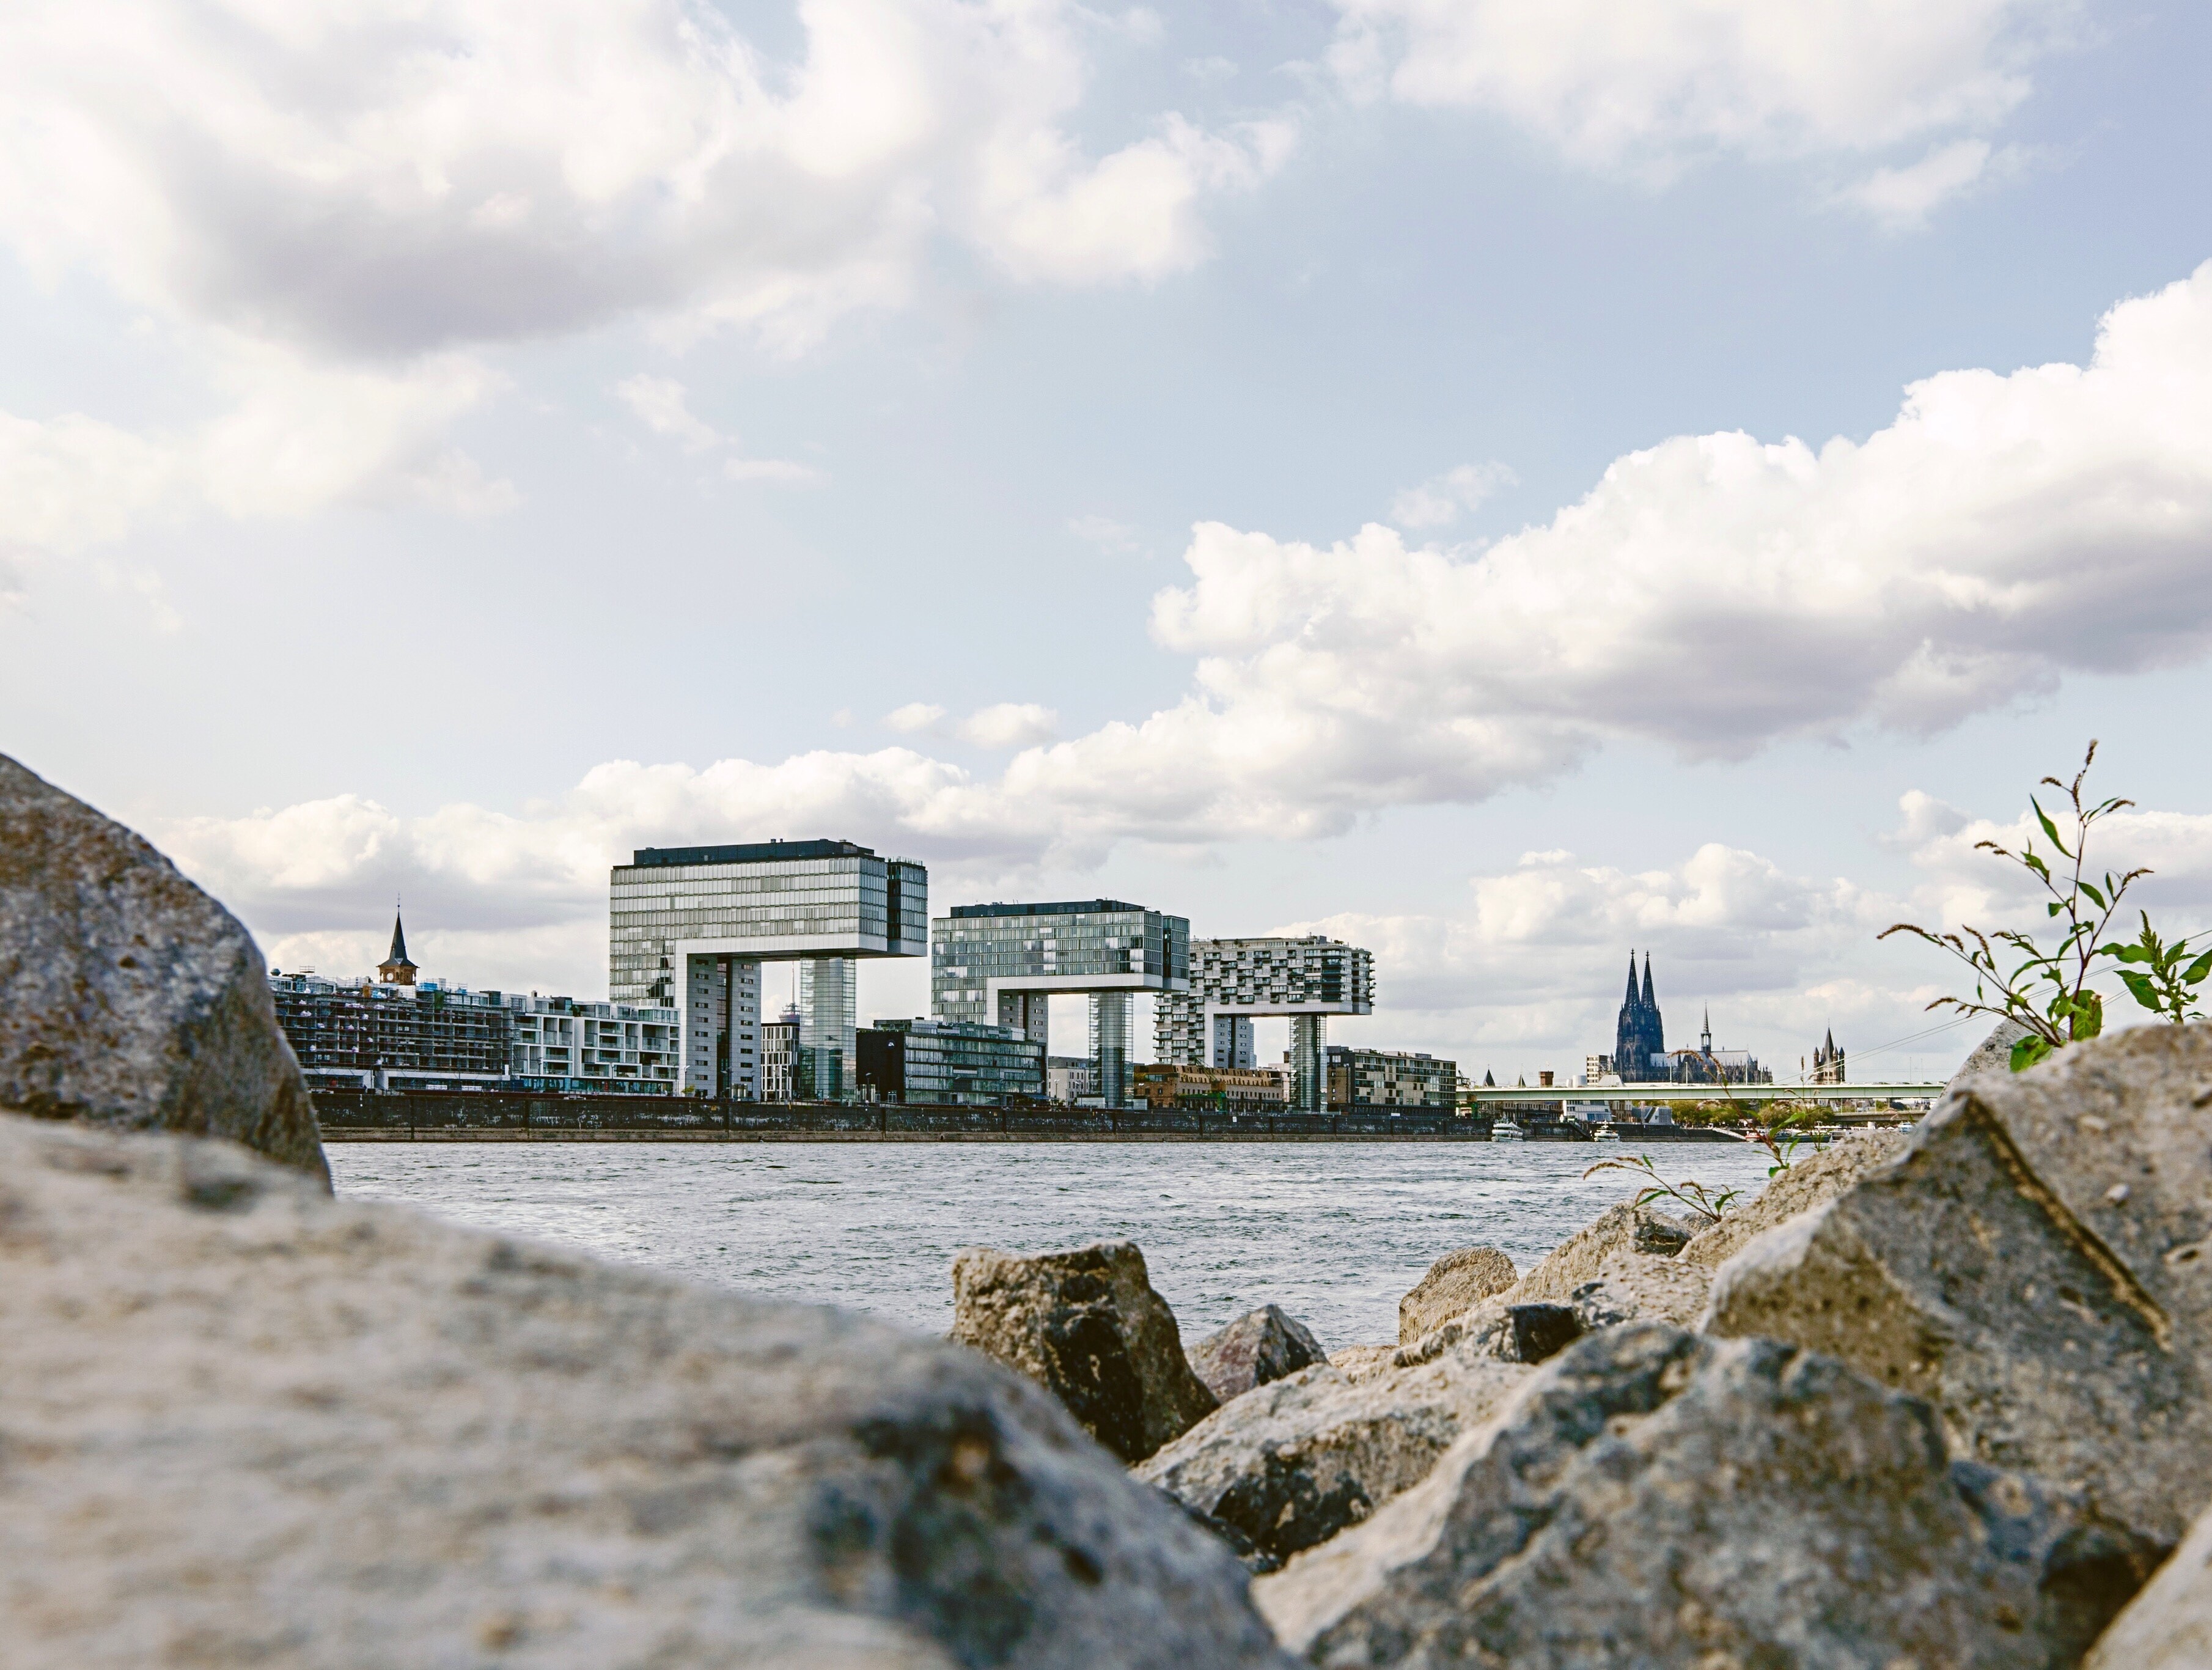 Wie Kräne ragen die drei Hochhäuser am Kölner Rheinufer über das Wasser. Im Hintergrund ist der Dom zu sehen. © Dennis Korb